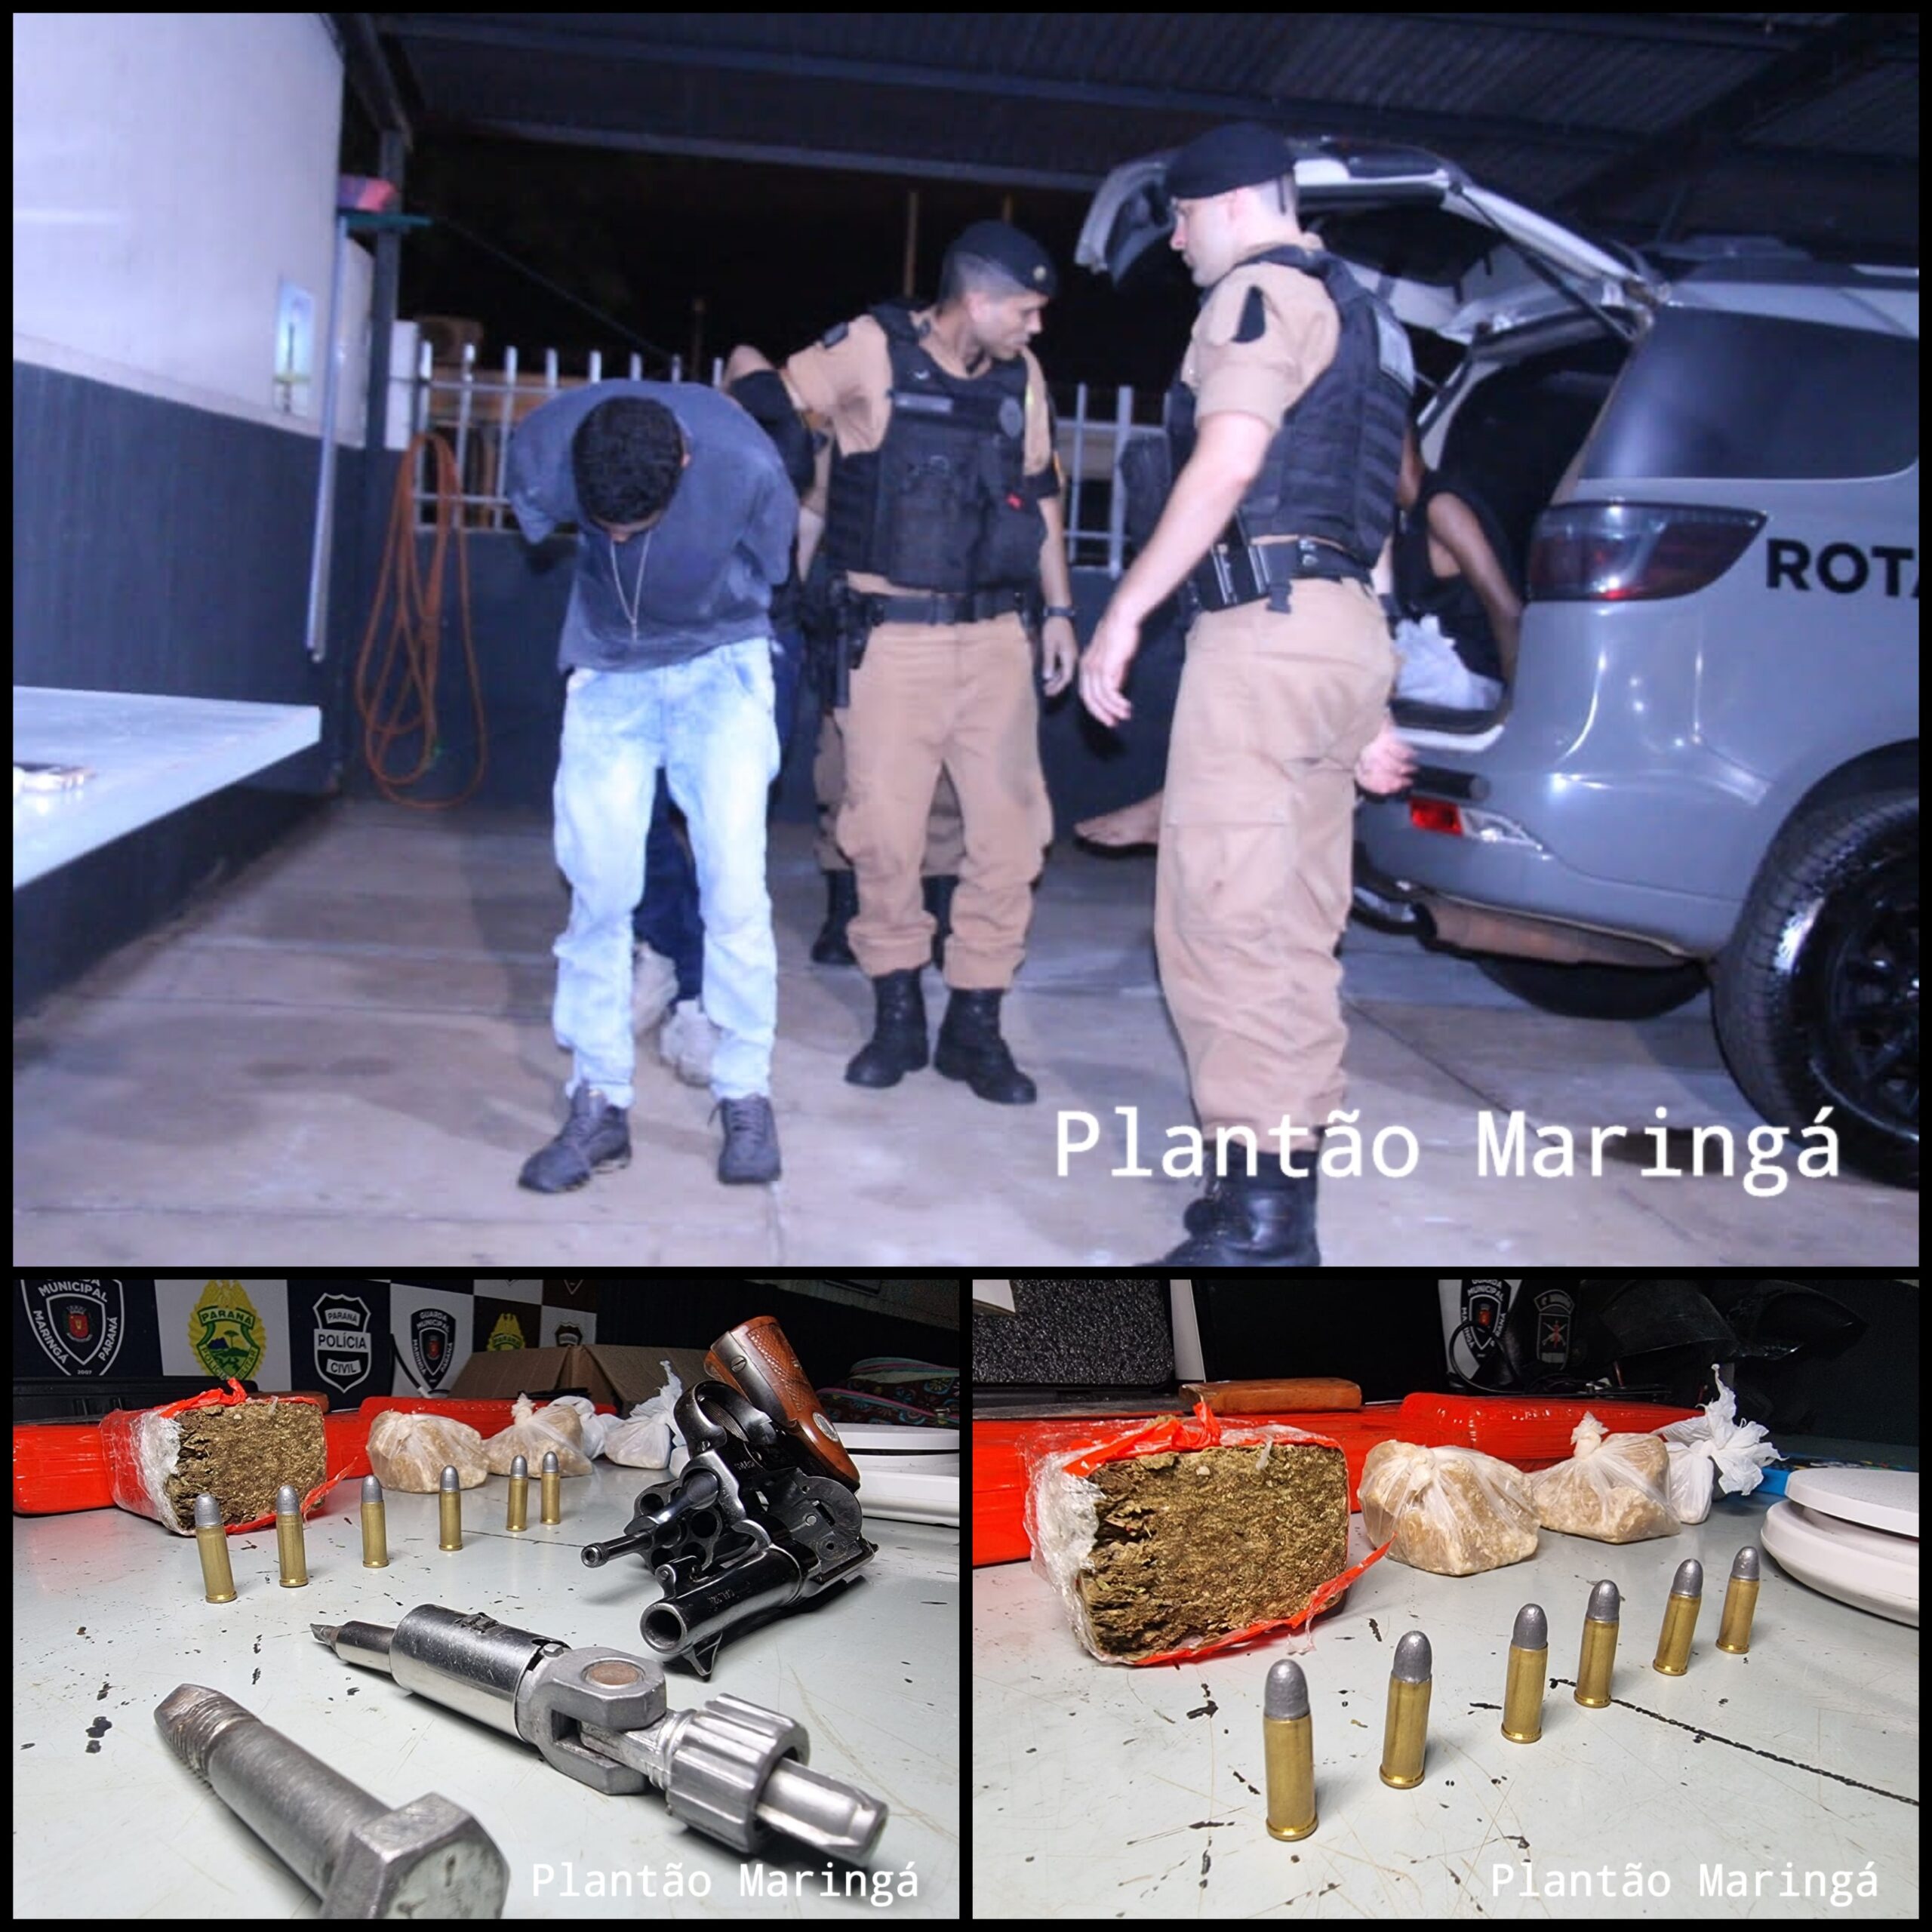 Fotos de Rotam prende assaltantes e recupera moto e carro roubados em Maringá